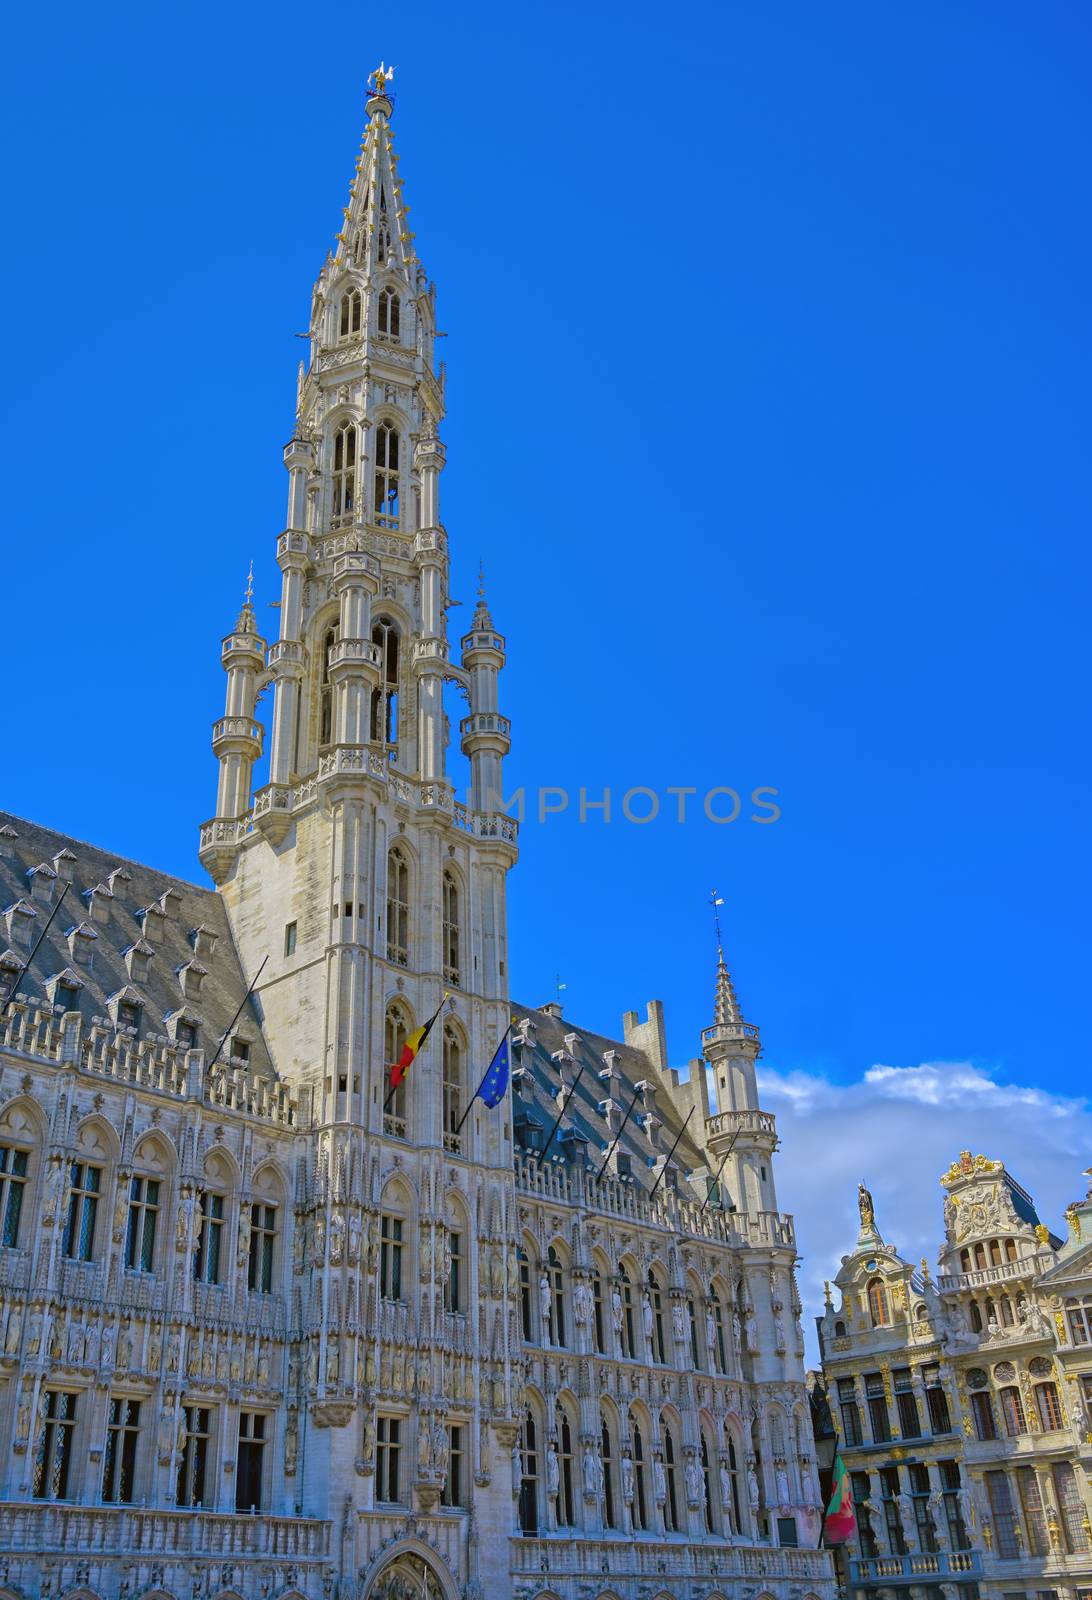 Town Hall in Brussels, Belgium by jbyard22